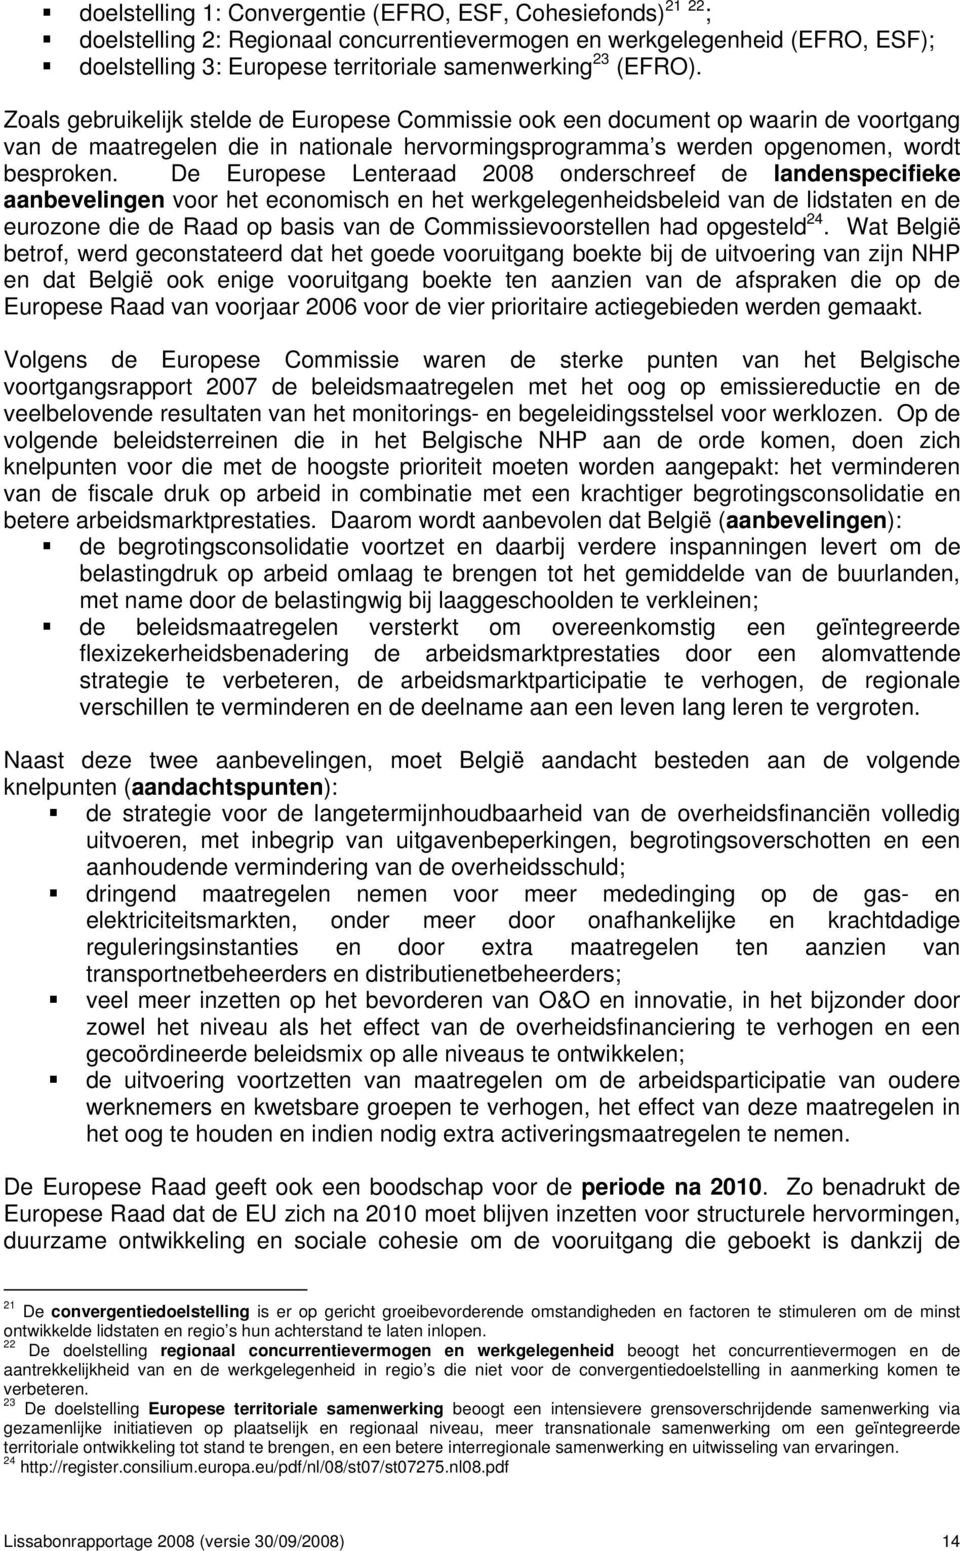 De Europese Lenteraad 2008 onderschreef de landenspecifieke aanbevelingen voor het economisch en het werkgelegenheidsbeleid van de lidstaten en de eurozone die de Raad op basis van de